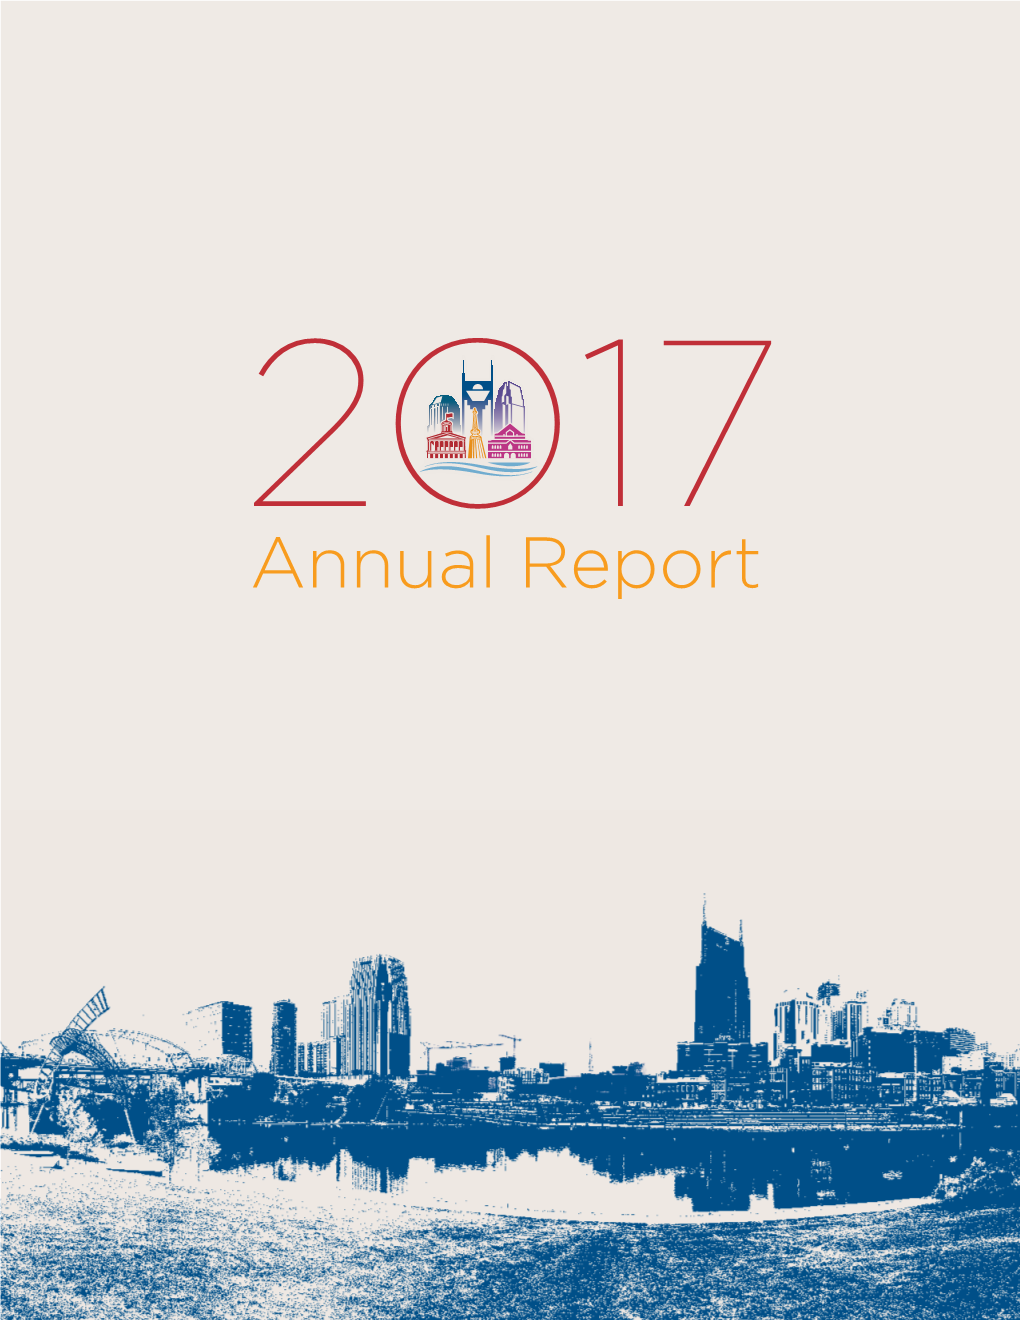 Annual Report 2017 Board of Directors